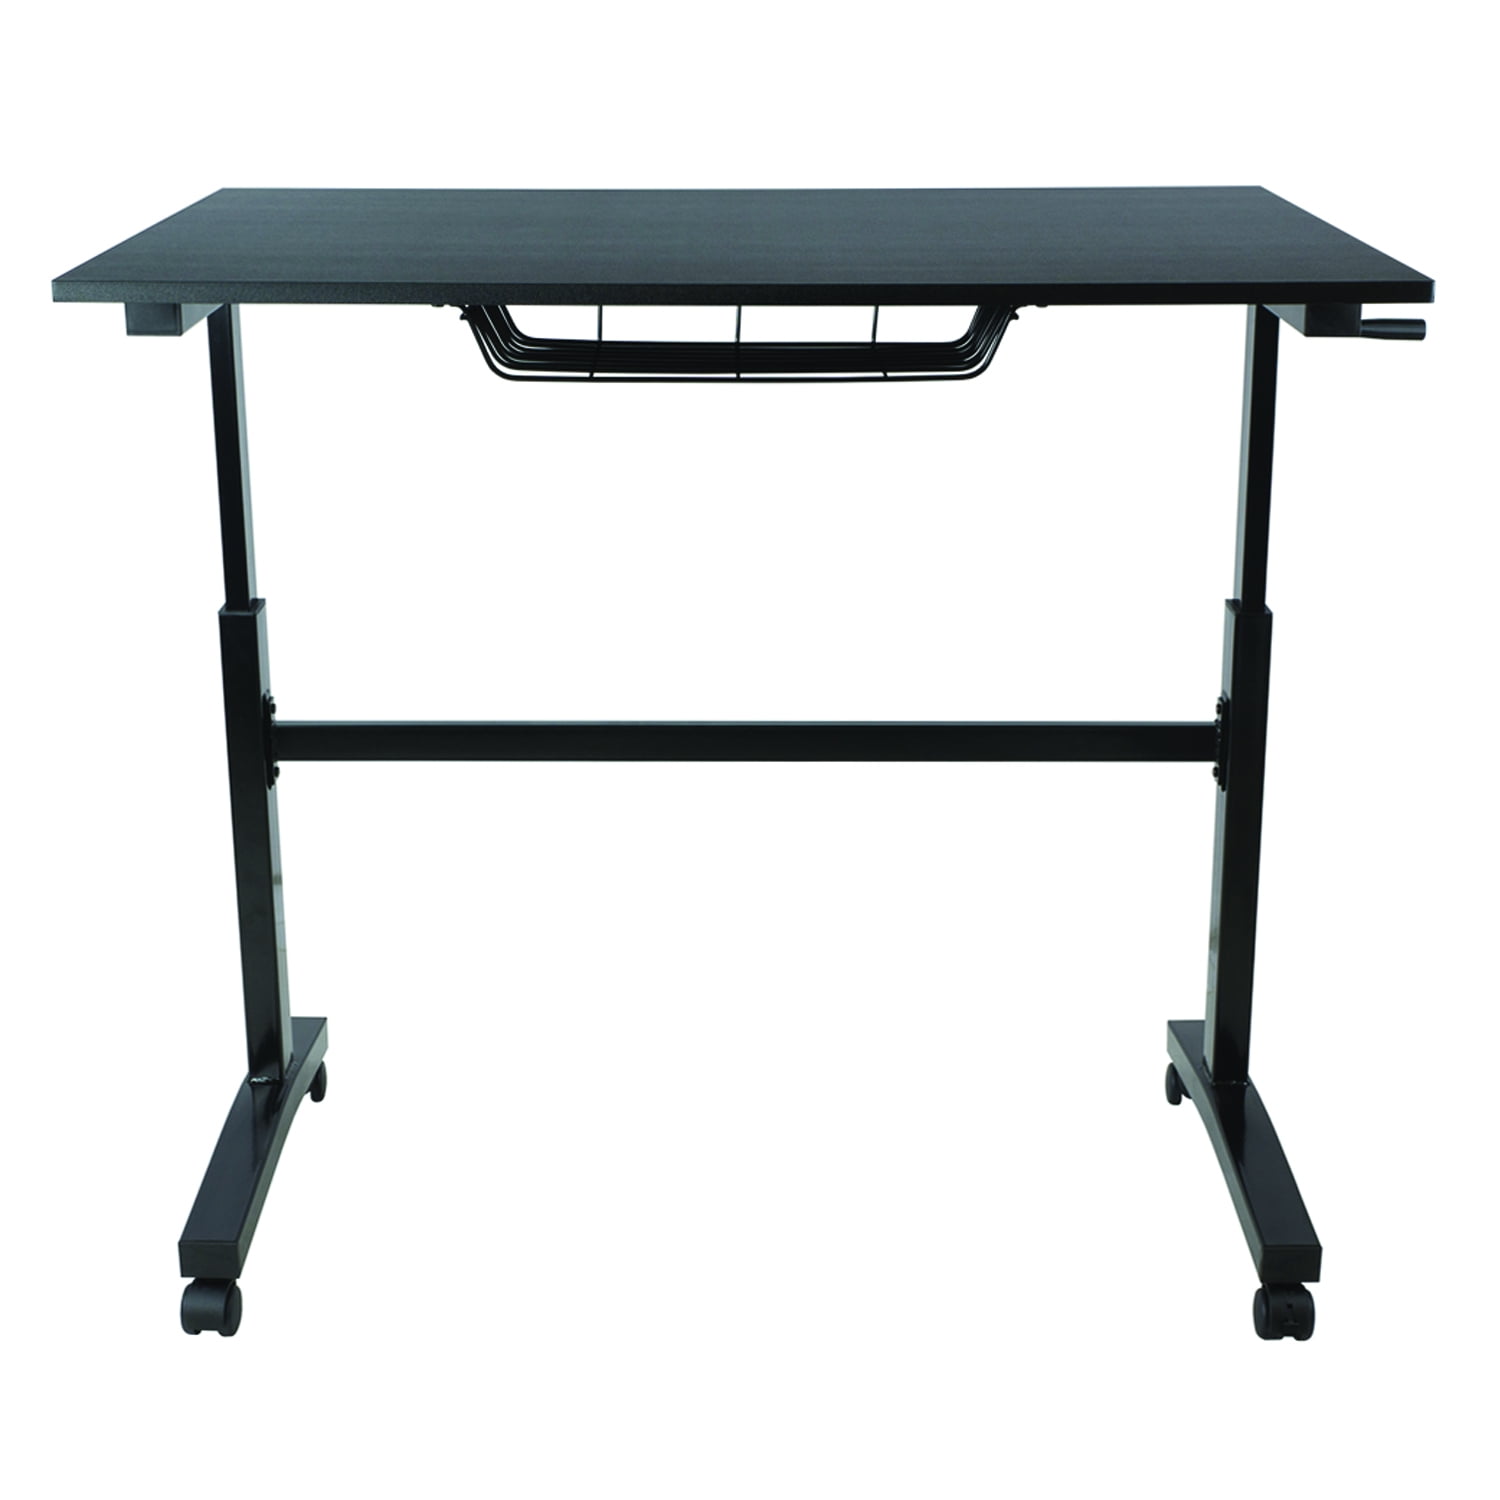 33908049 Sit Stand Adjustable Desk, Black